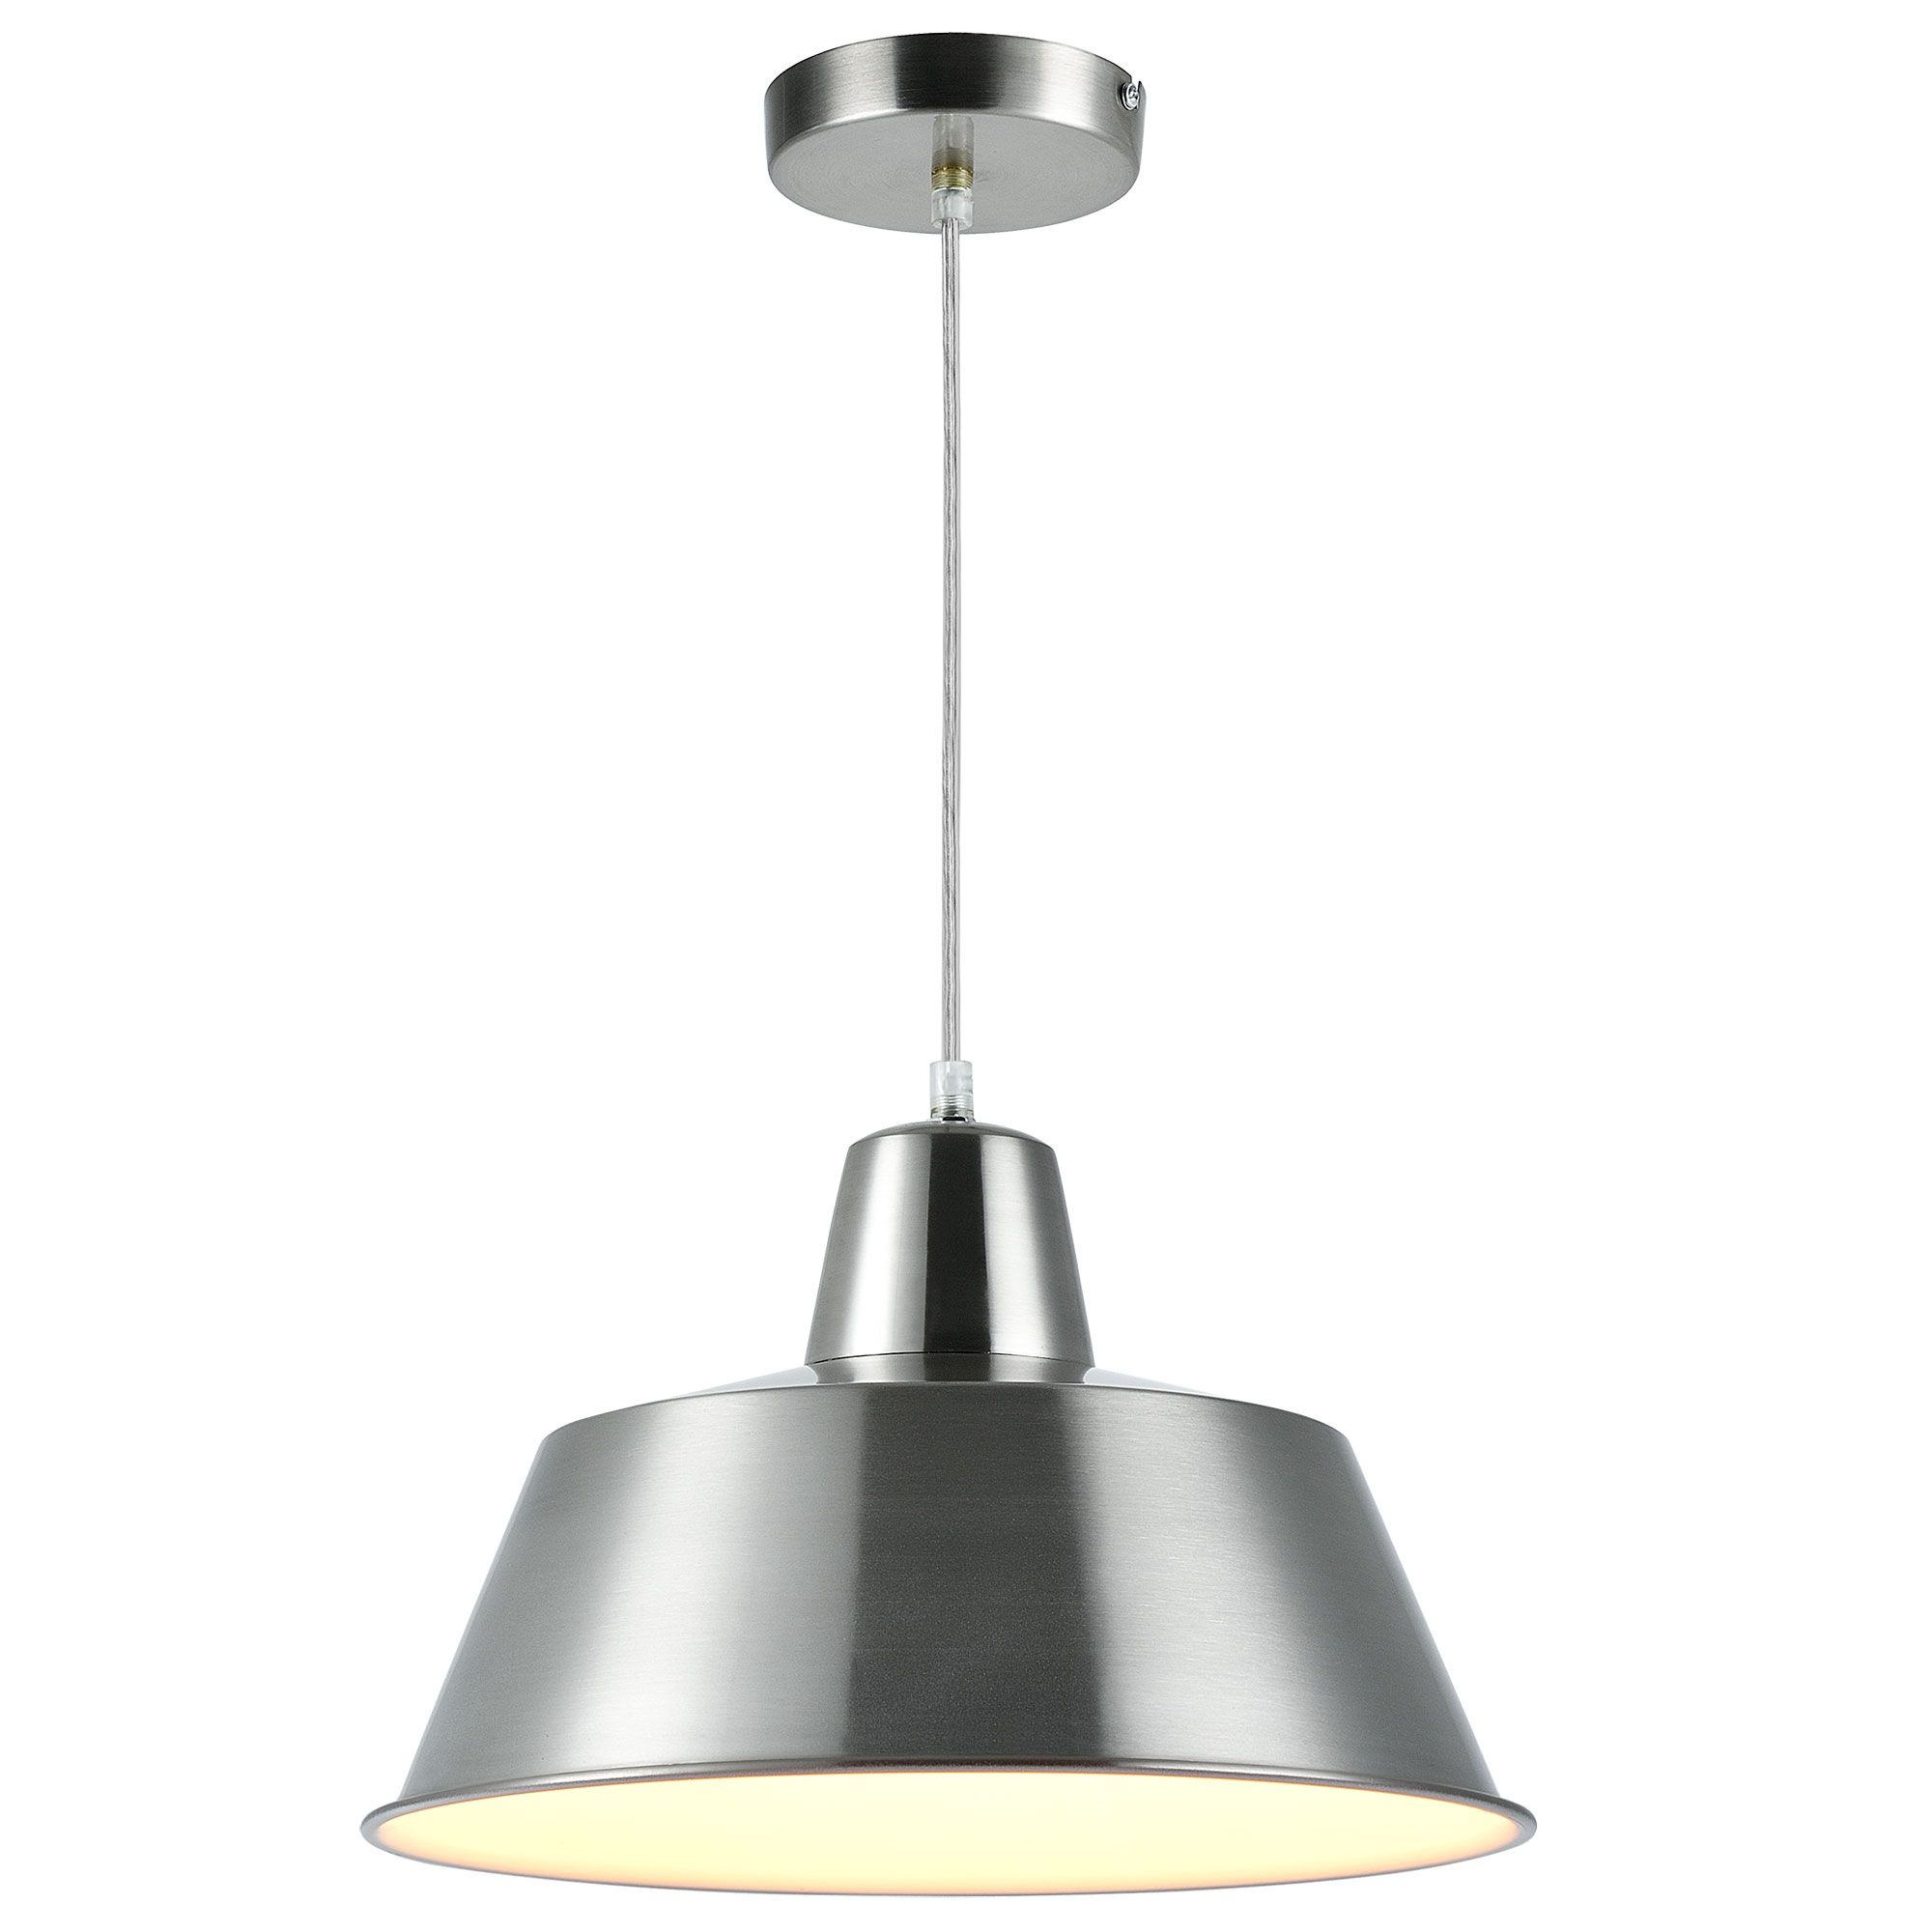 [lux.pro]® Dekoratívní designové závěsné svítidlo / stropní svítidlo - stříbrno-bílé (1 x E27) HT168168 - H.T. Trade Service GmbH & Co. KG